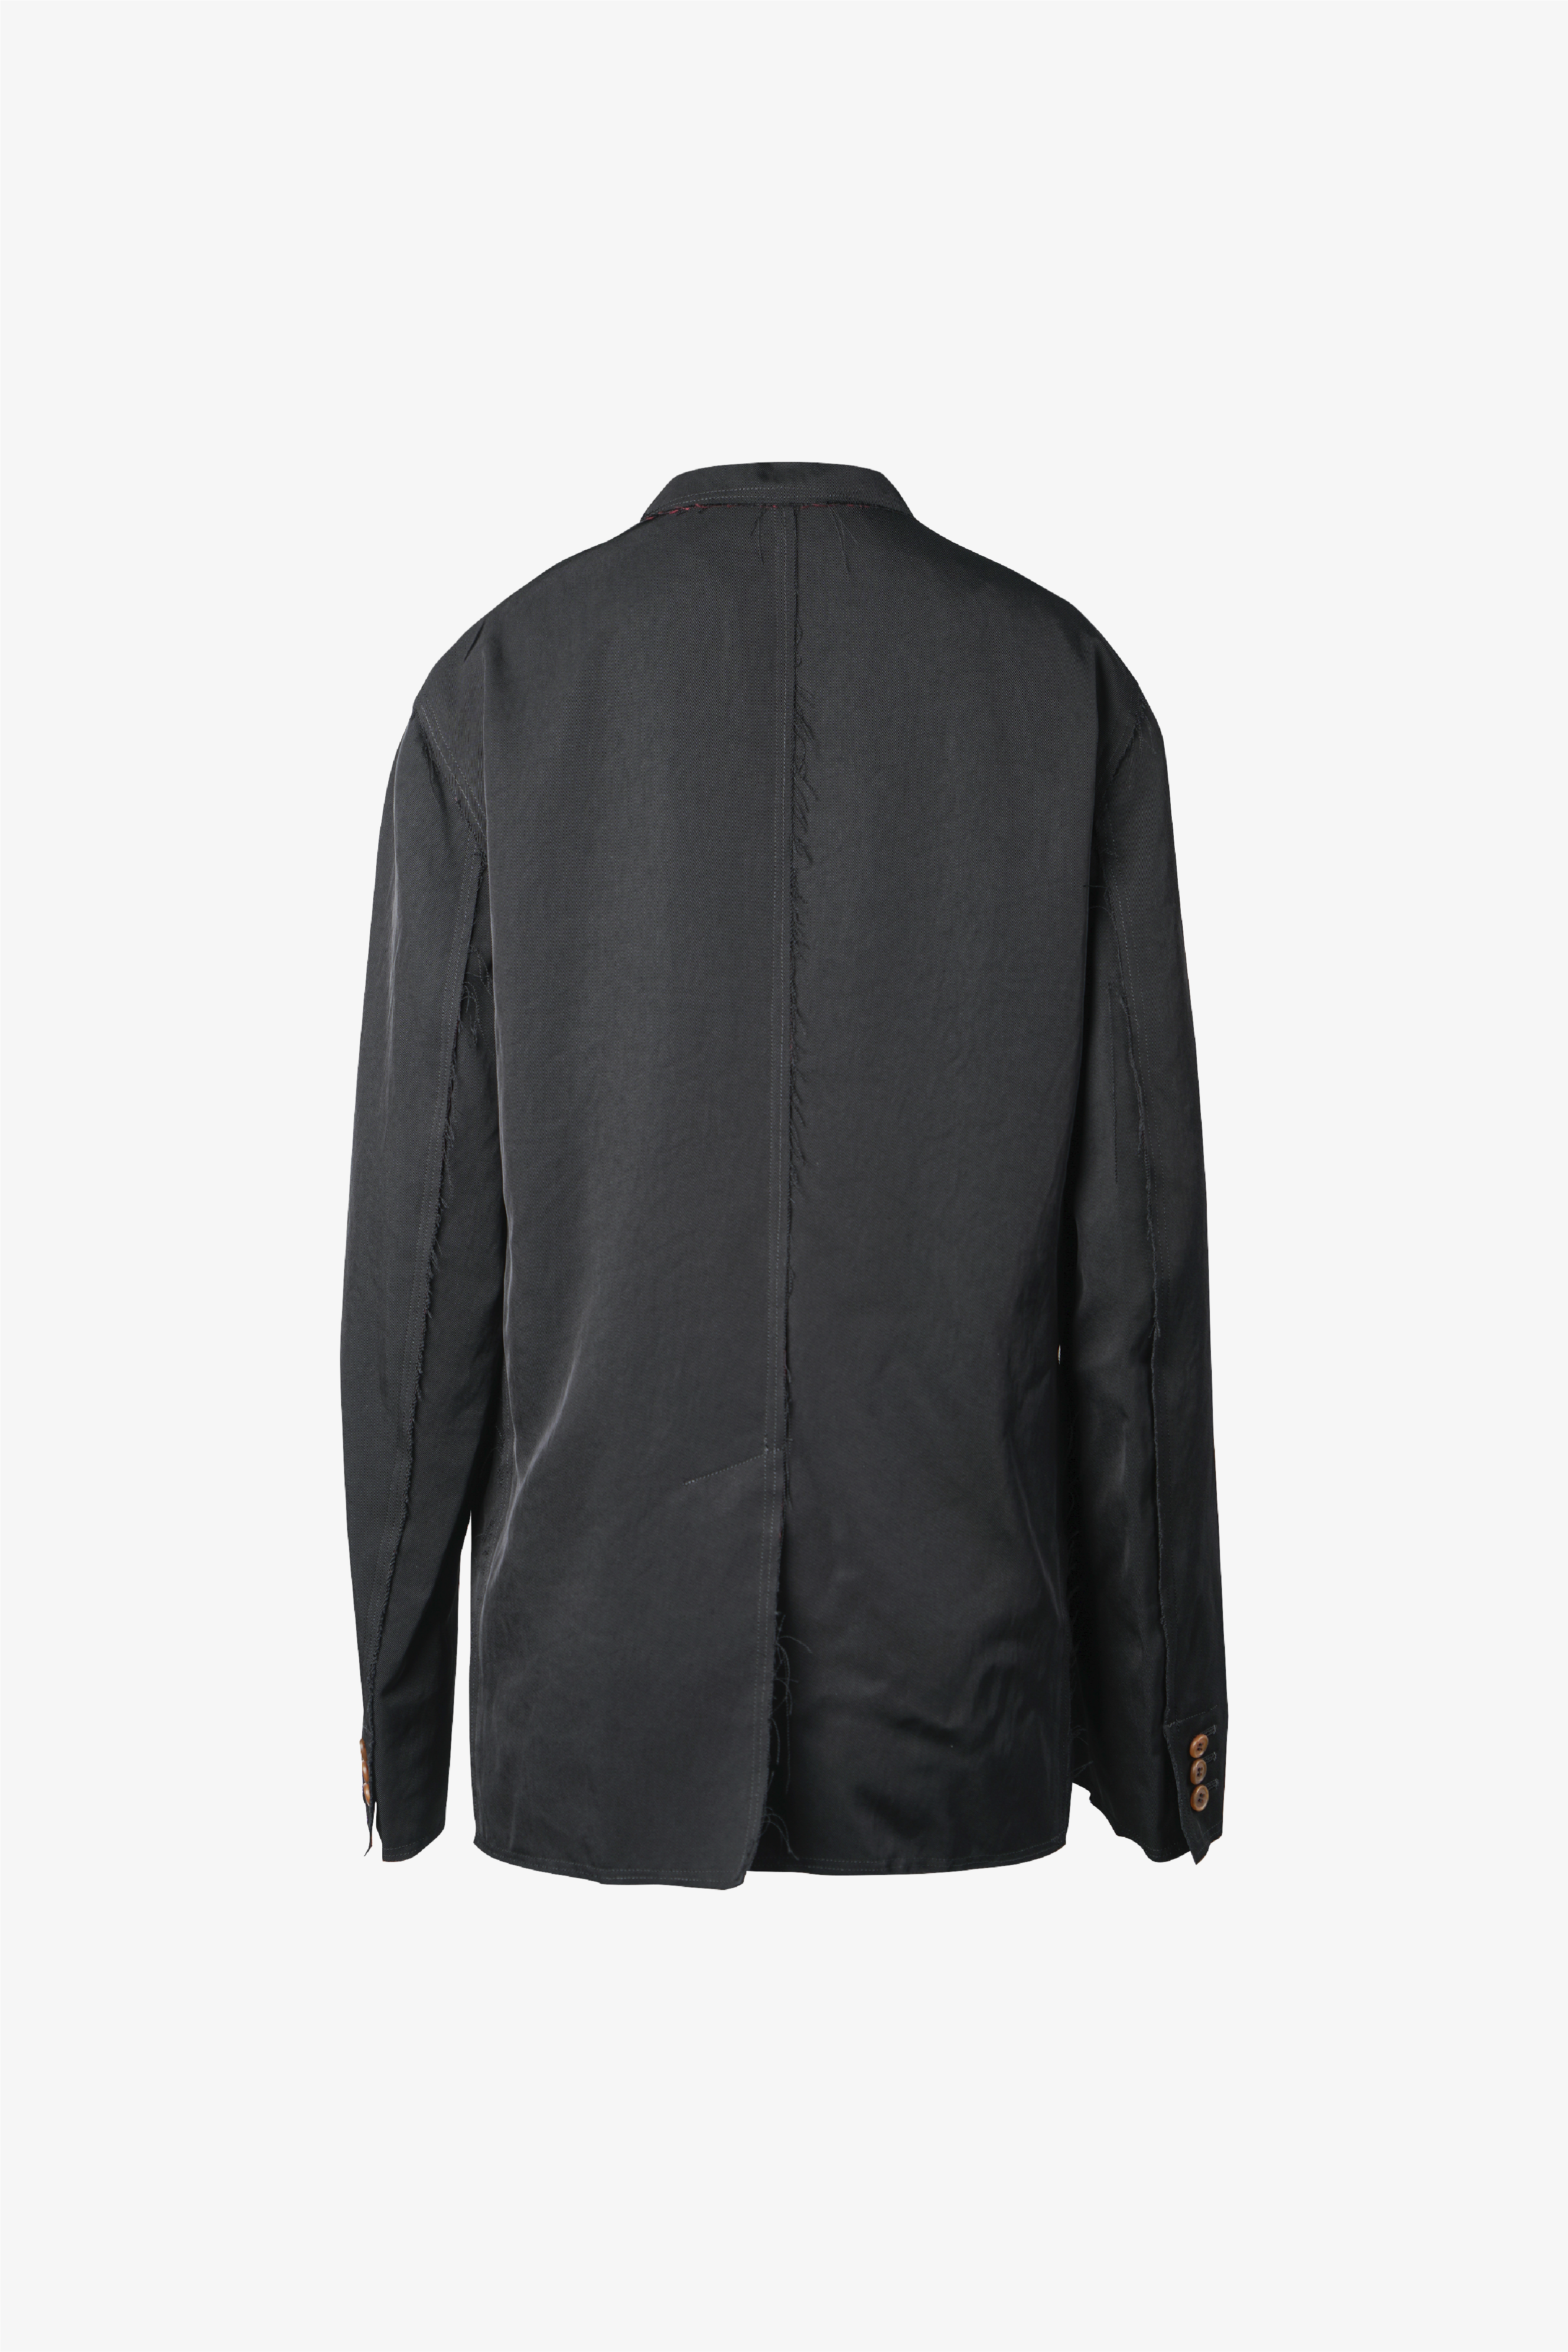 Selectshop FRAME - COMME DES GARÇONS BLACK Jacket Outerwear Dubai